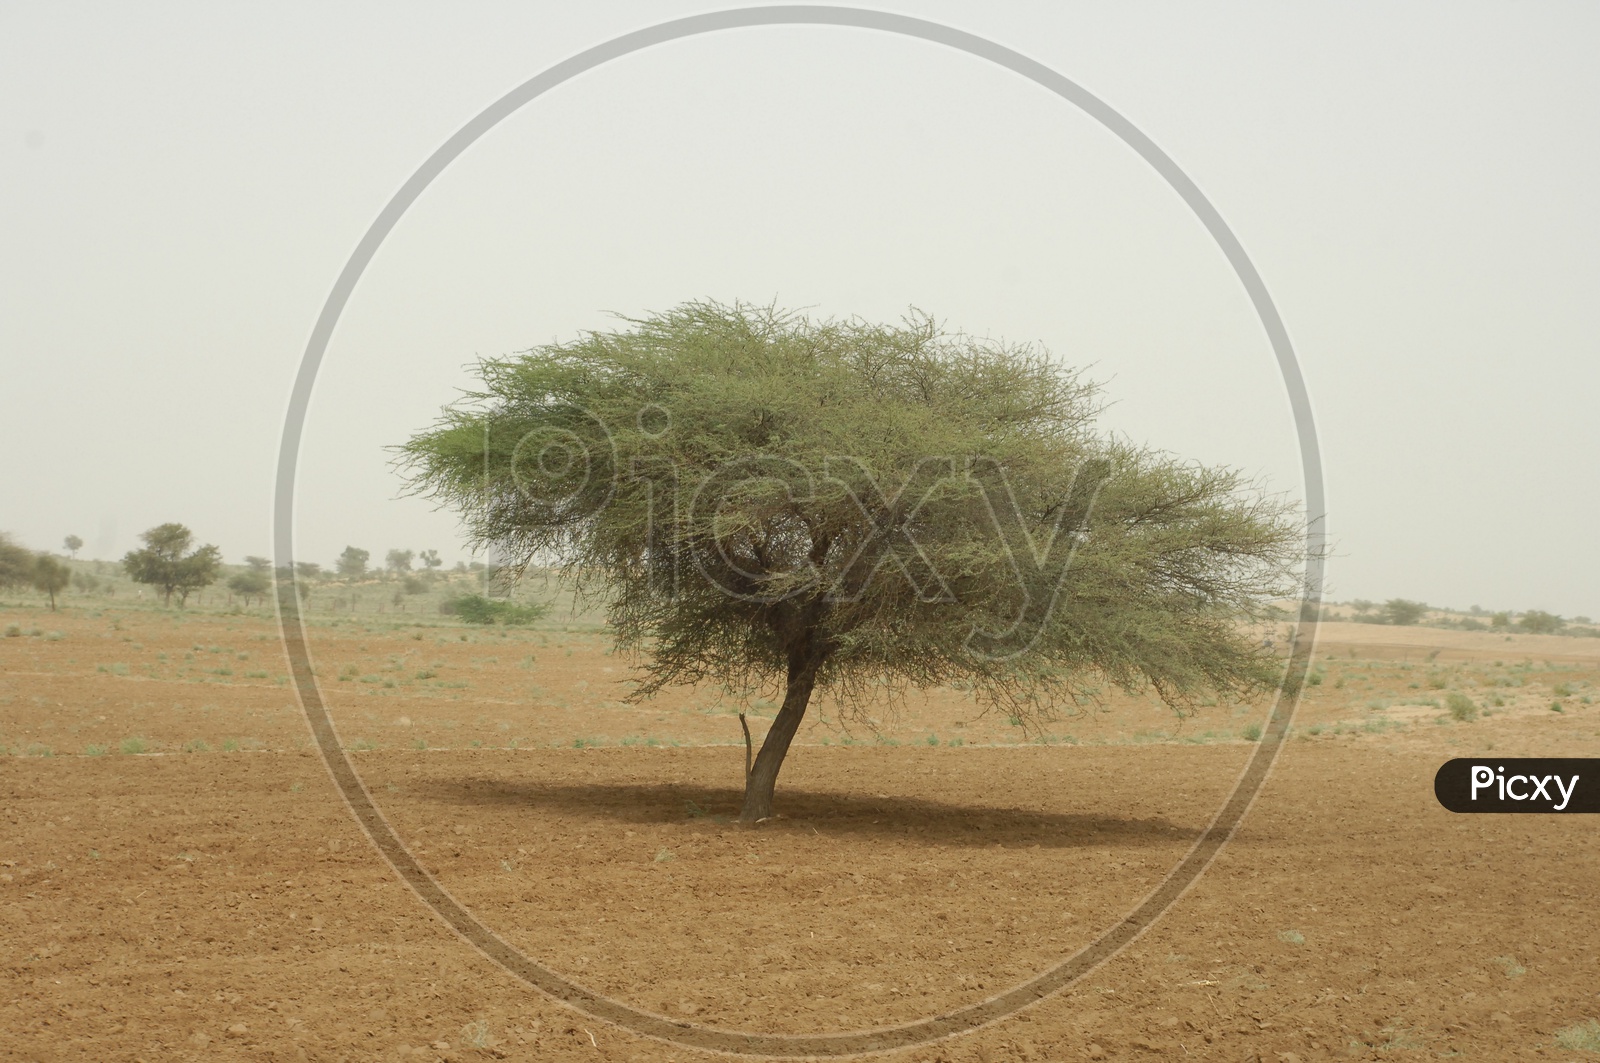 A Lone Tree in Desert